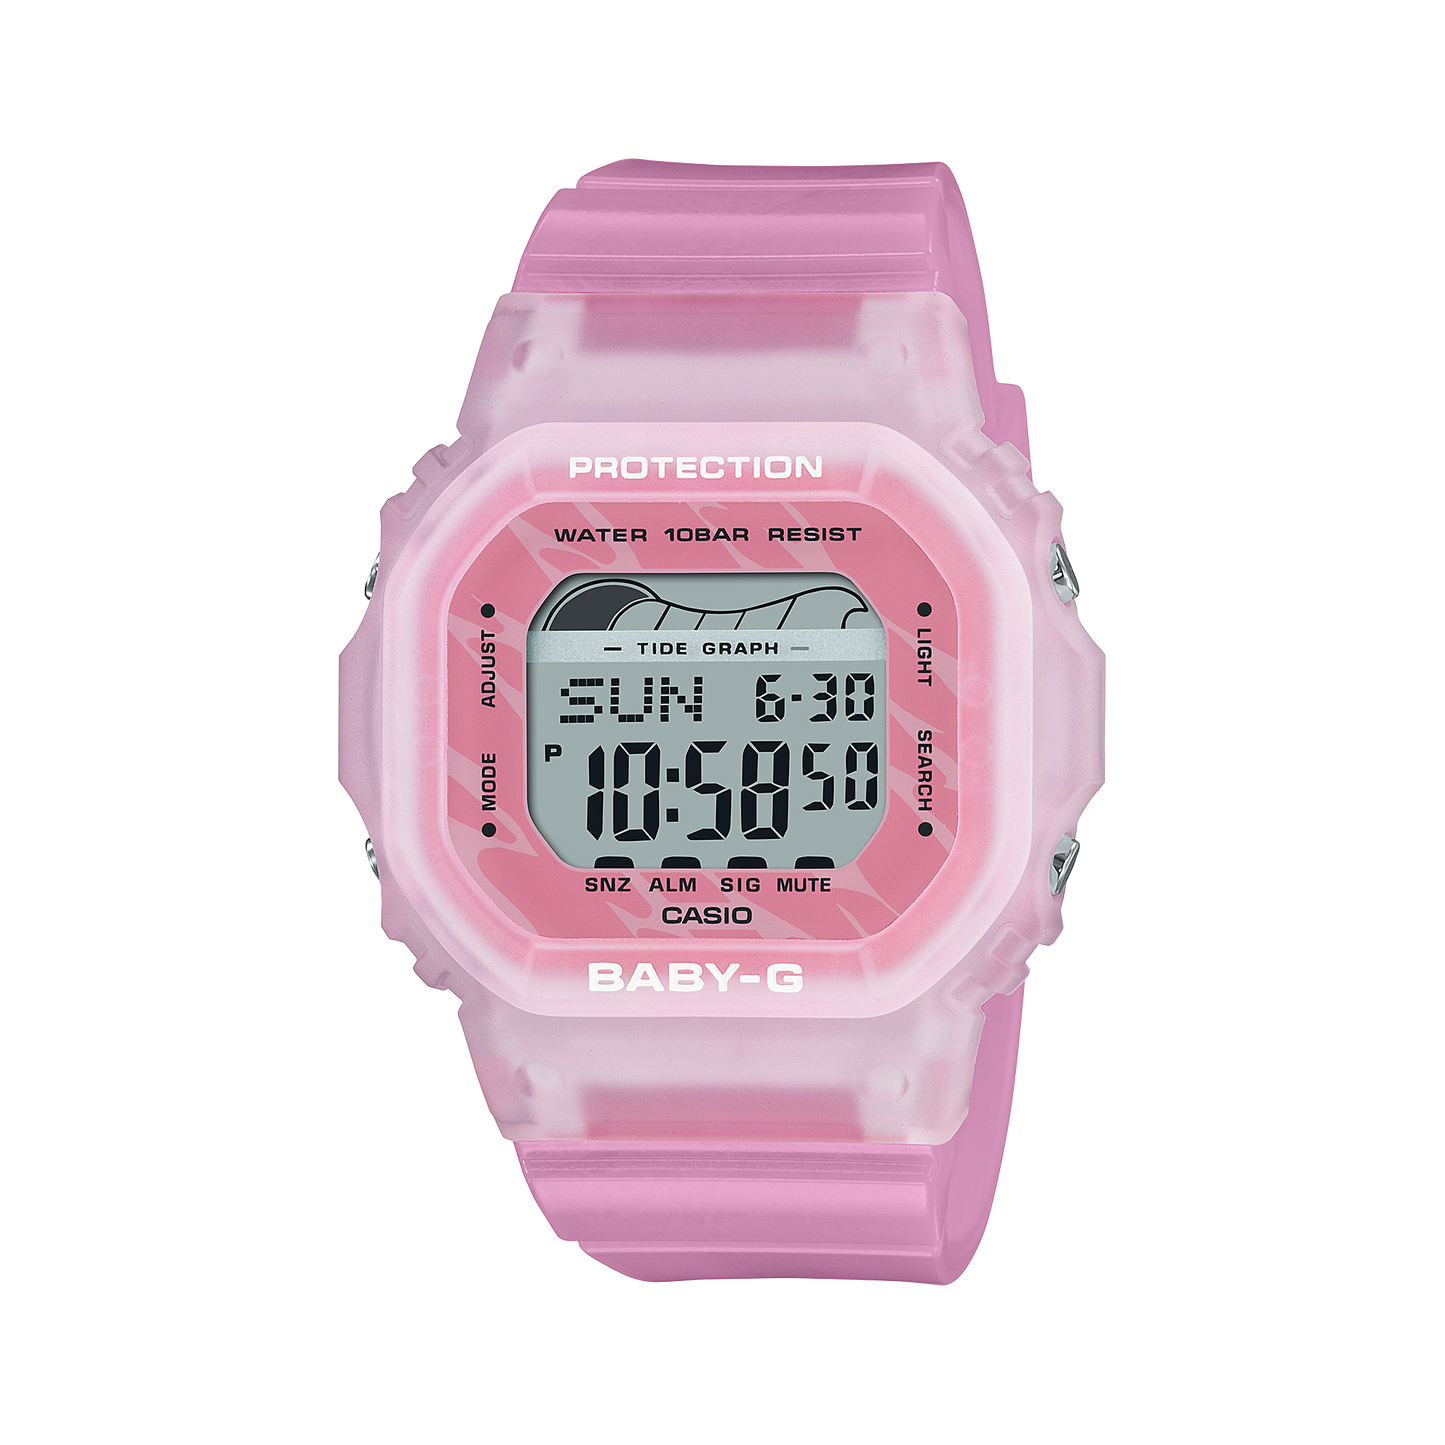 Casio Baby-G BLX-565S-4DR Digital Ladies Watch, Pink